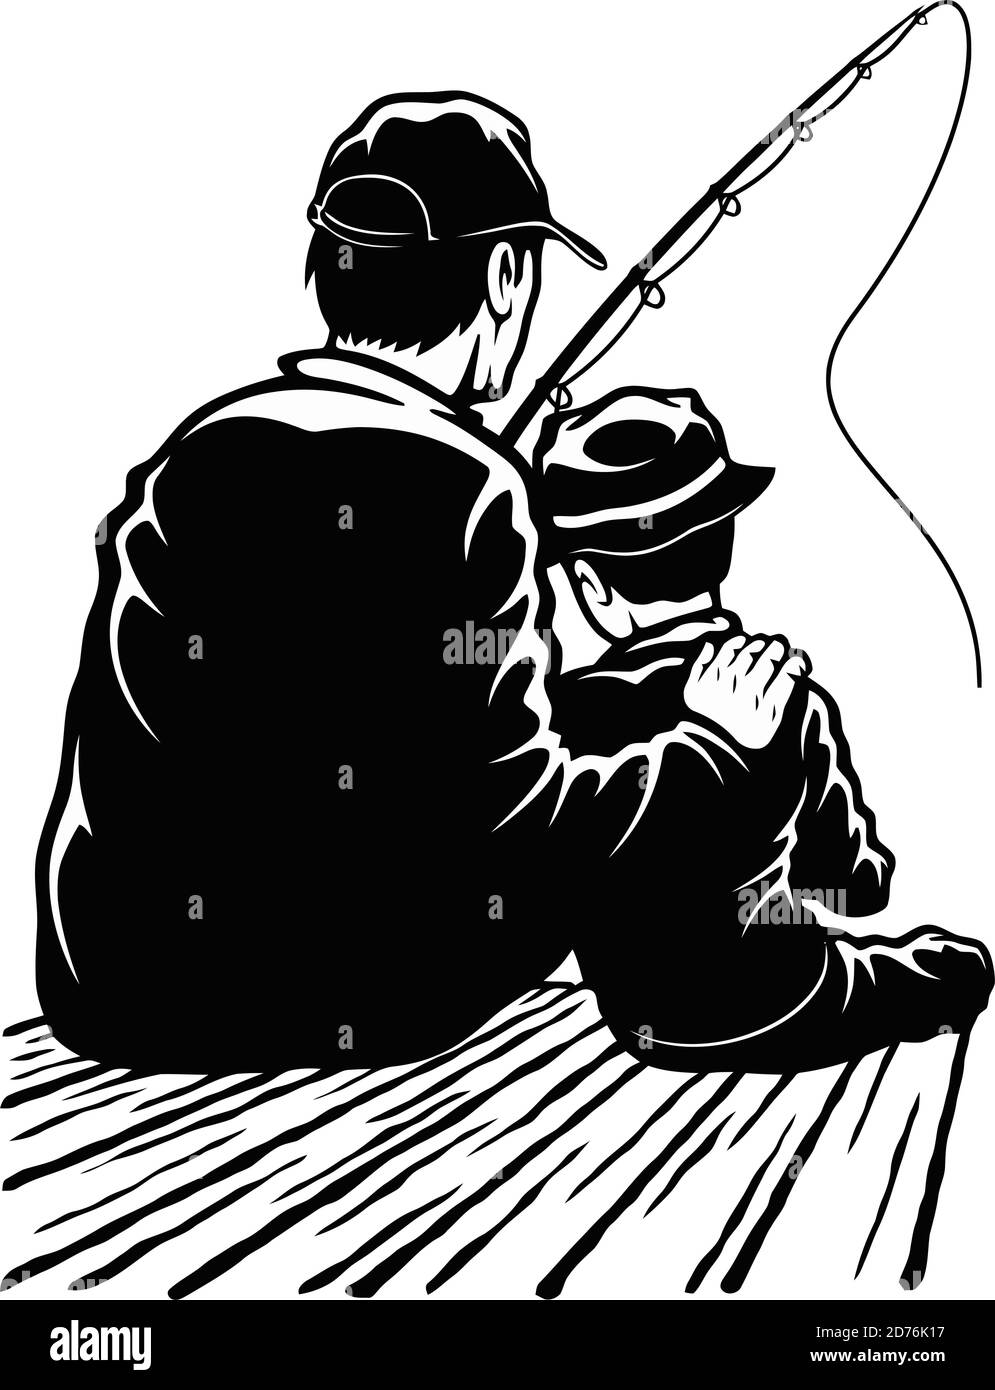 Fils et papa - dessin pêche - père et fils fishermans Illustration de Vecteur